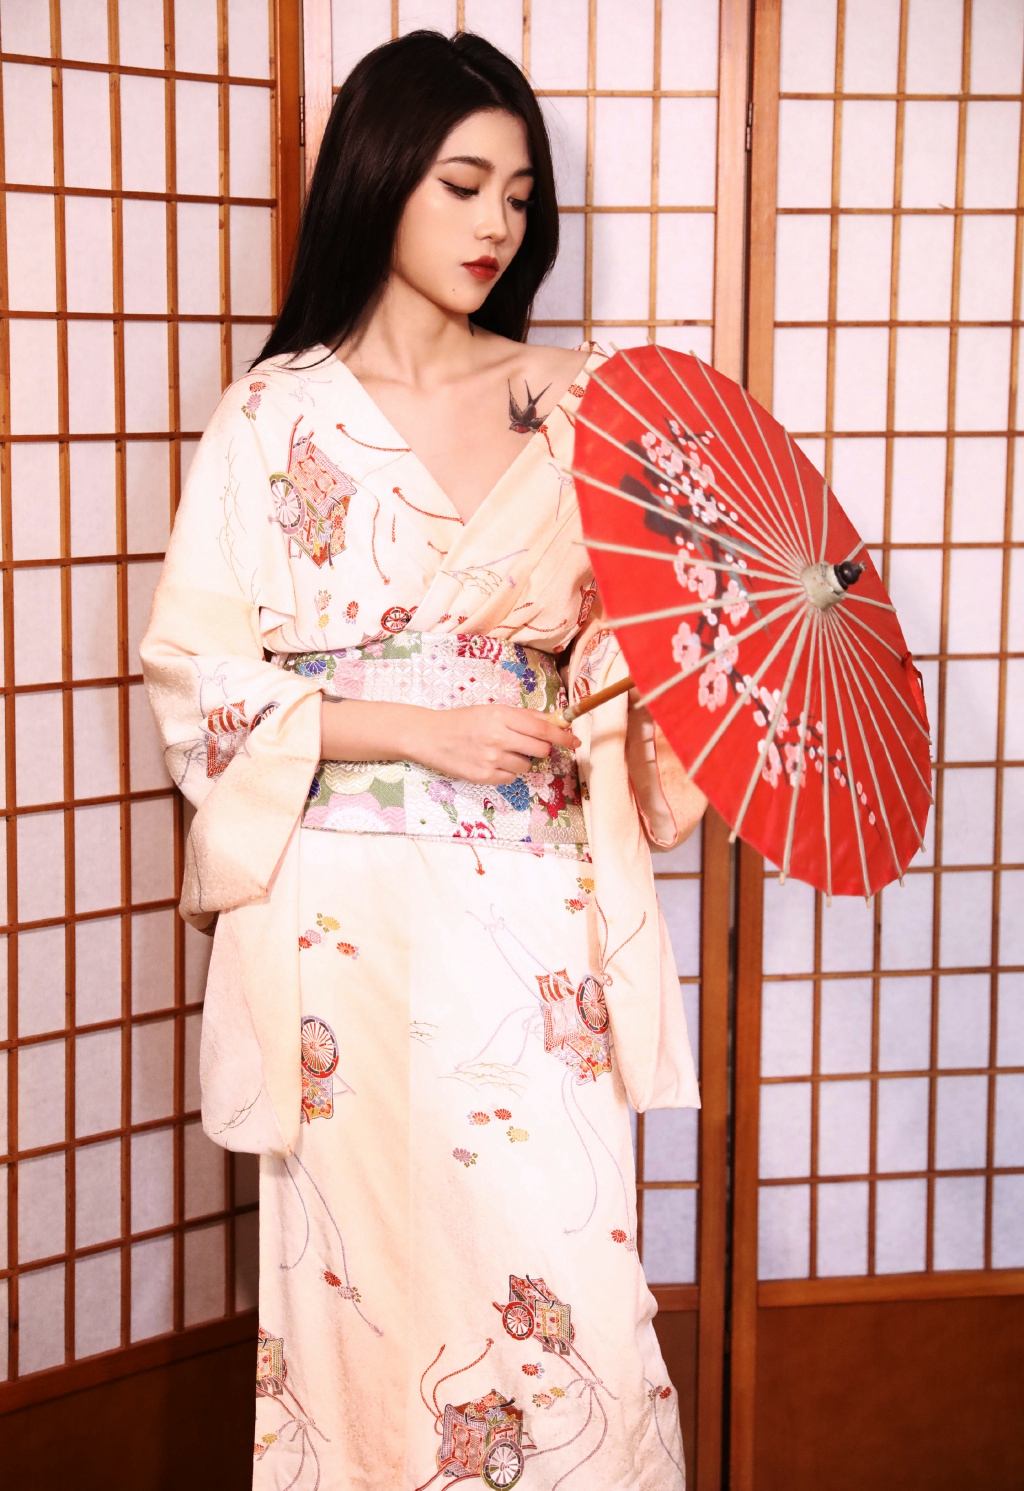 性感美女御姐日本和服妩媚诱惑私人摄影  第8张